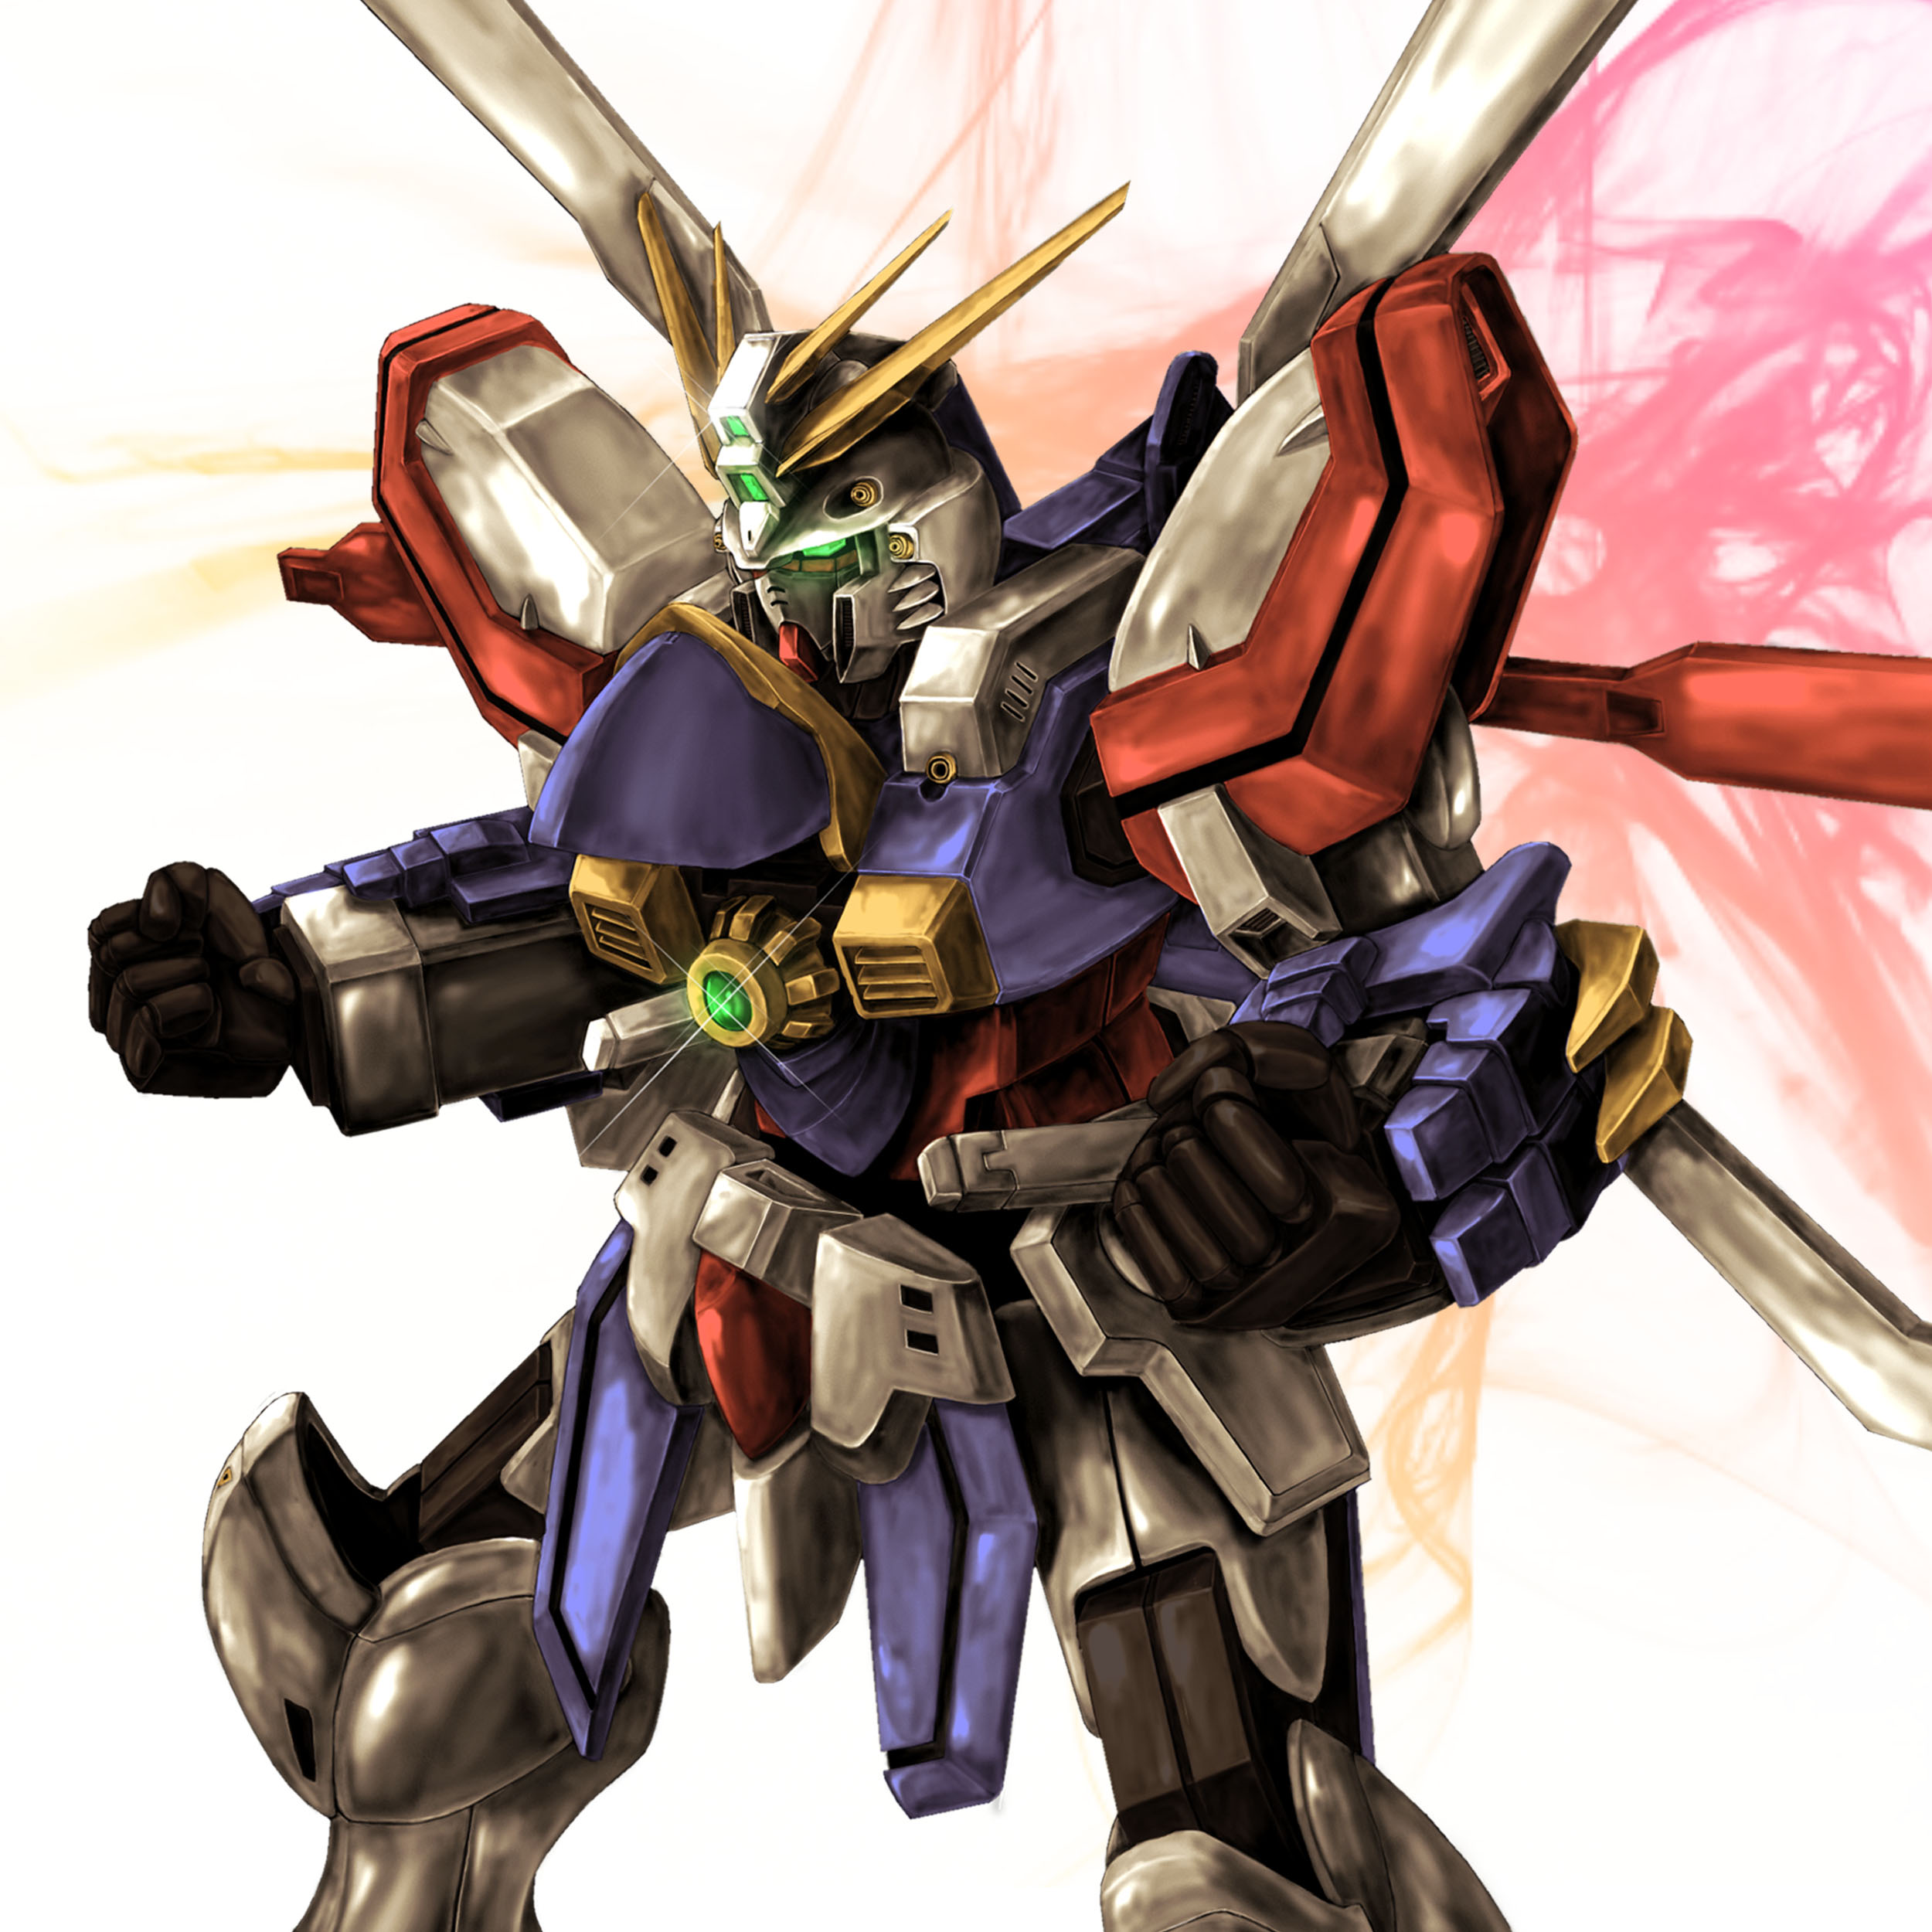 Anime Mechs Super Robot Taisen Gundam Mobile Fighter G Gundam God Gundam Artwork Digital Art Fan Art 2500x2500